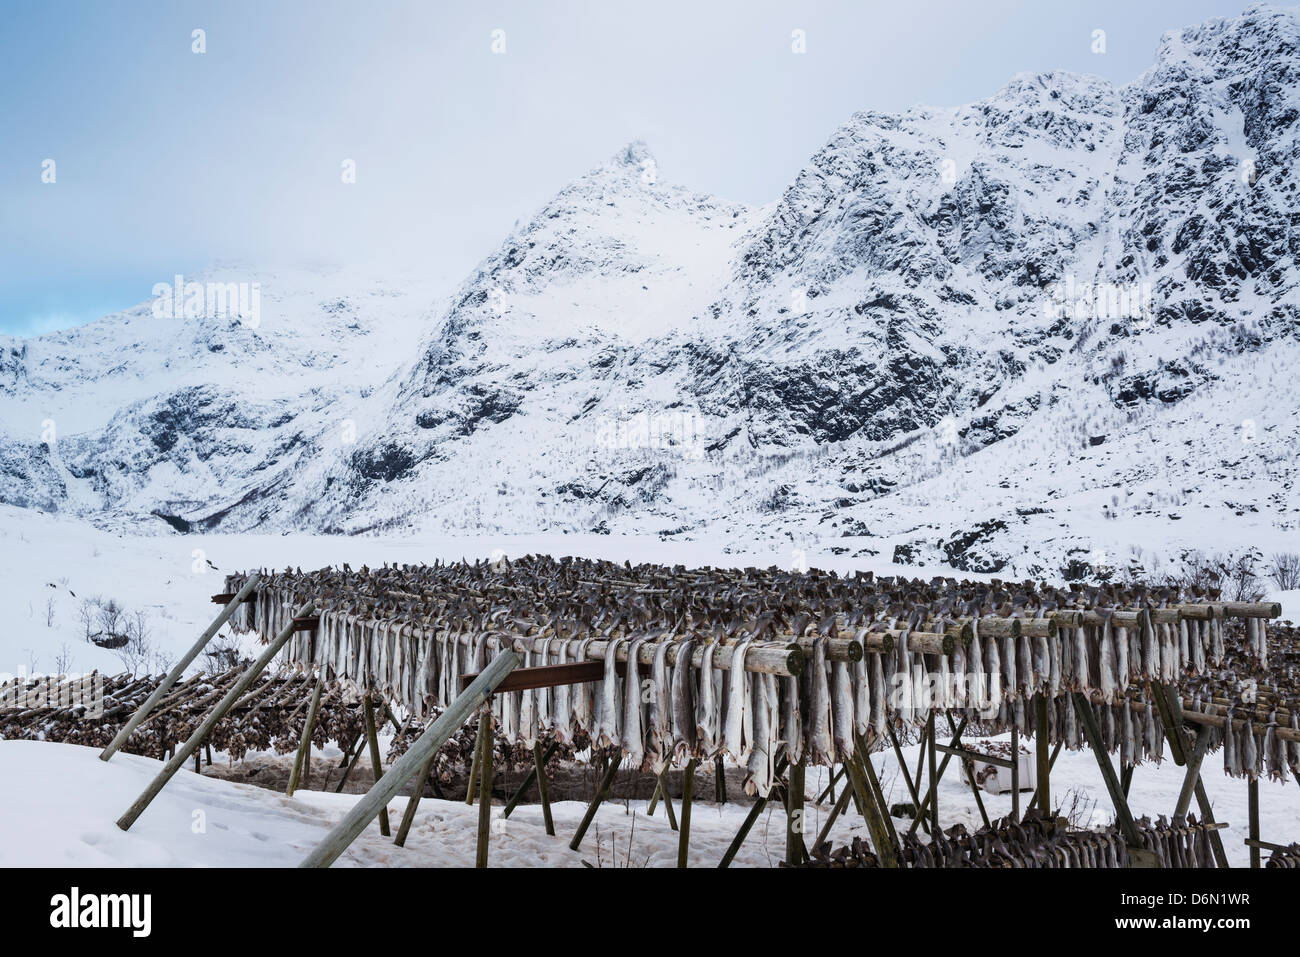 Il Merluzzo Baccalà appesi per asciugare in coperta di neve paesaggio invernale, Å, Moskenesøy, Isole Lofoten in Norvegia Foto Stock